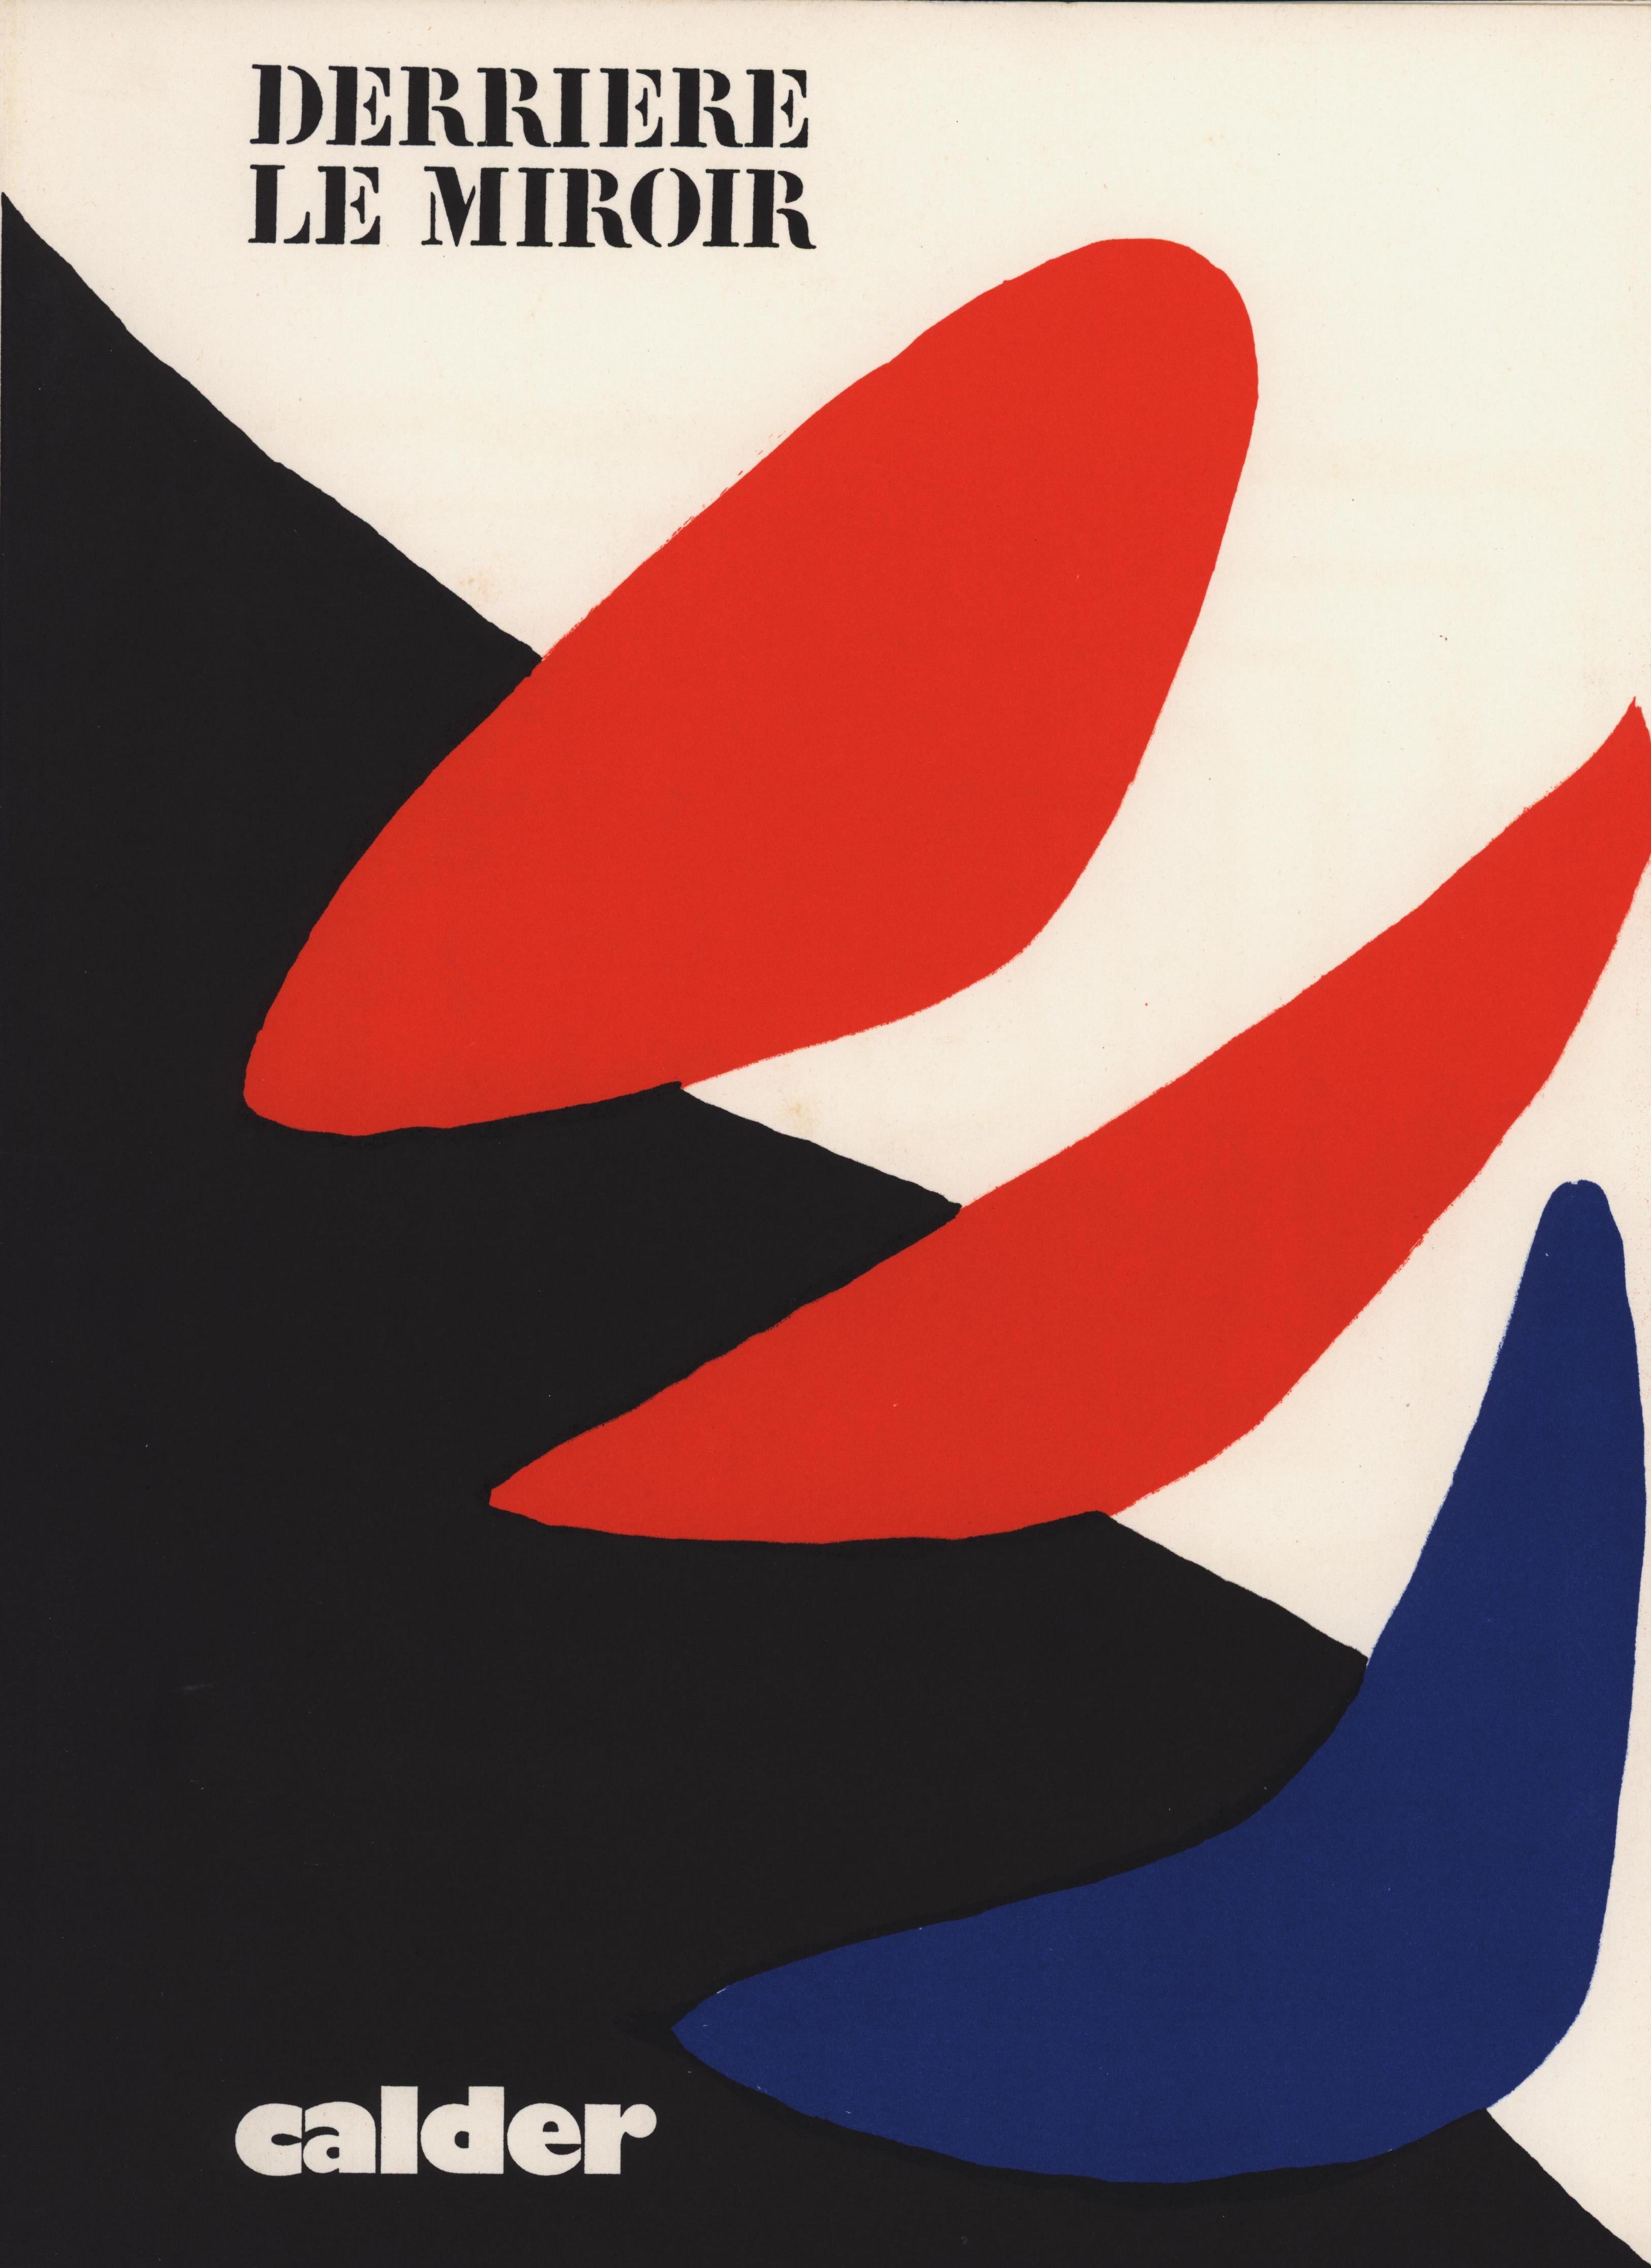 Alexander Calder Couverture lithographique c. 1971 de Derrière le miroir :

Couverture lithographique en couleurs ; 11 x 15 pouces.
Très bon état général vintage.
Non signé d'une édition inconnue avec des couleurs vives et nettes.
Imprimé en France